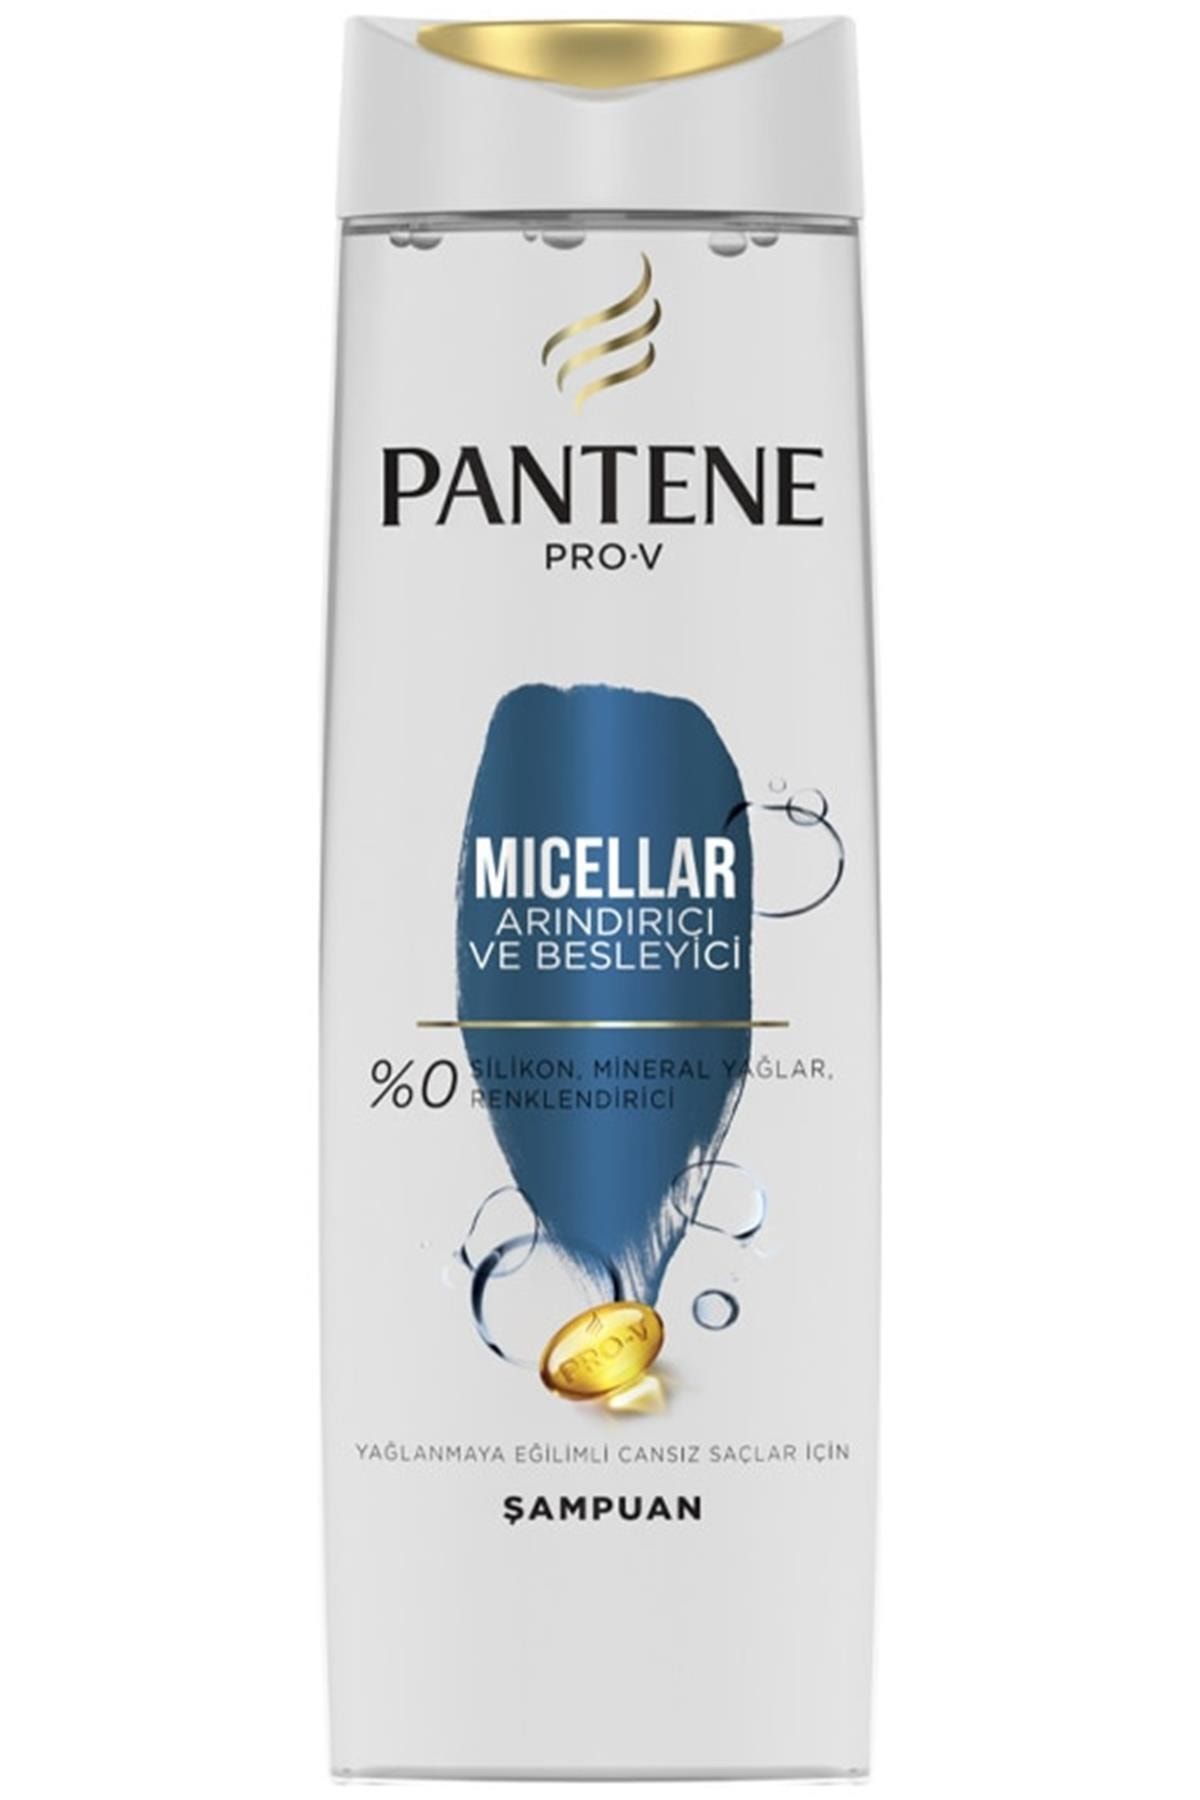 Pantene Pro-v Micellar Arındırıcı Ve Besleyici Şampuan 400 Ml Kategori: Şampuan